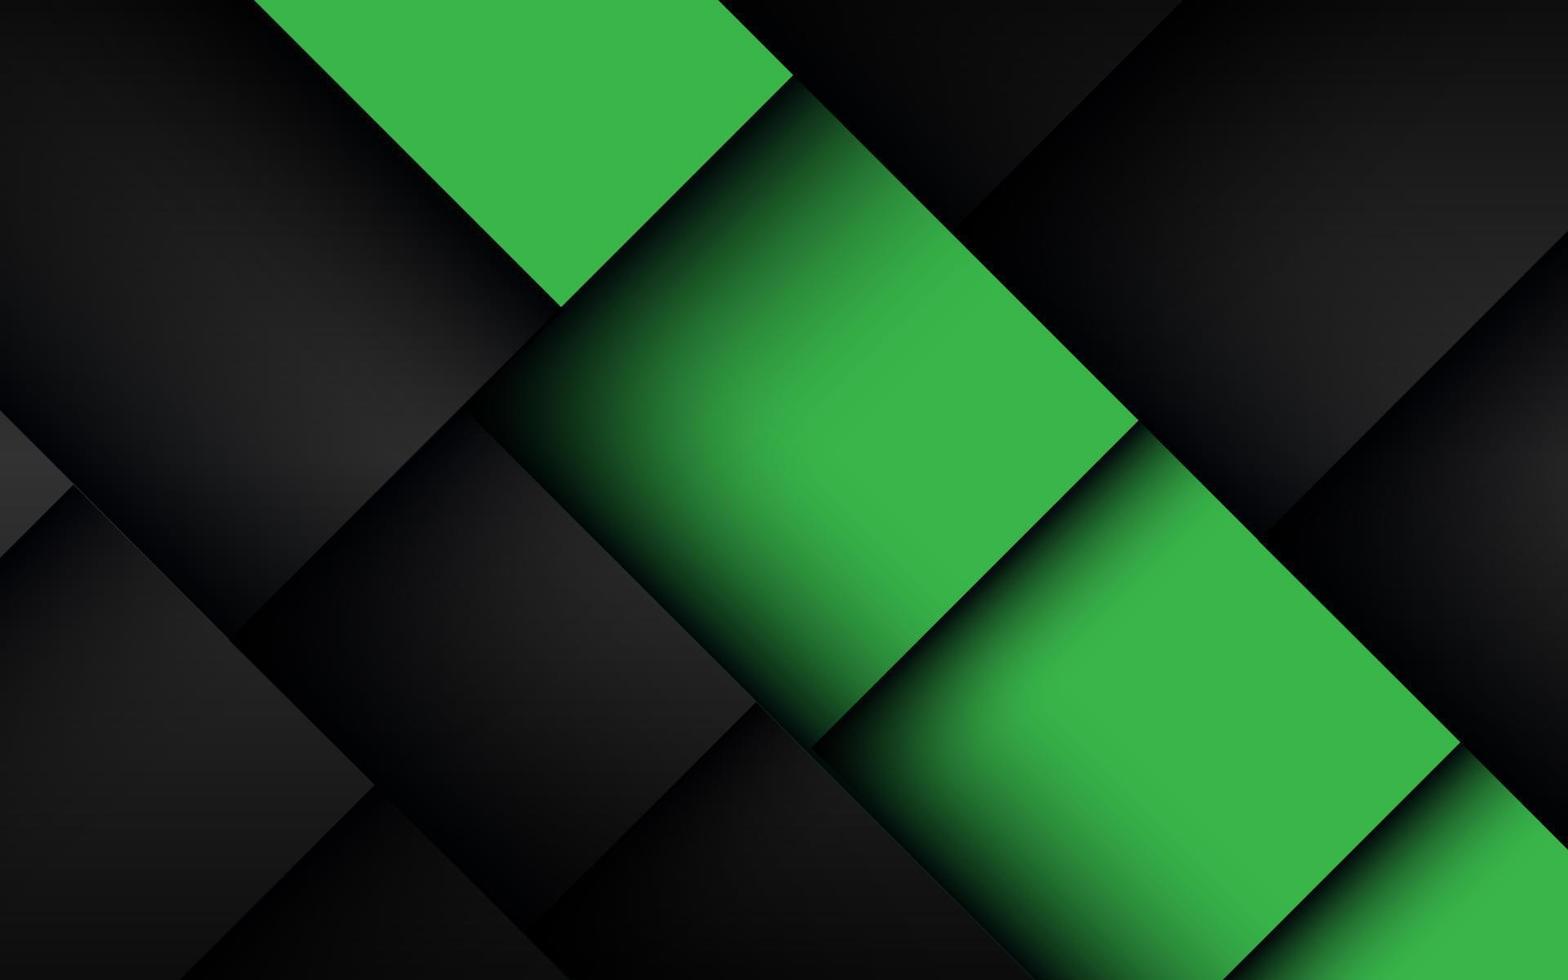 abstrato verde escuro triângulo sombra linha geométrica com fundo de design de espaço em branco. vetor eps10